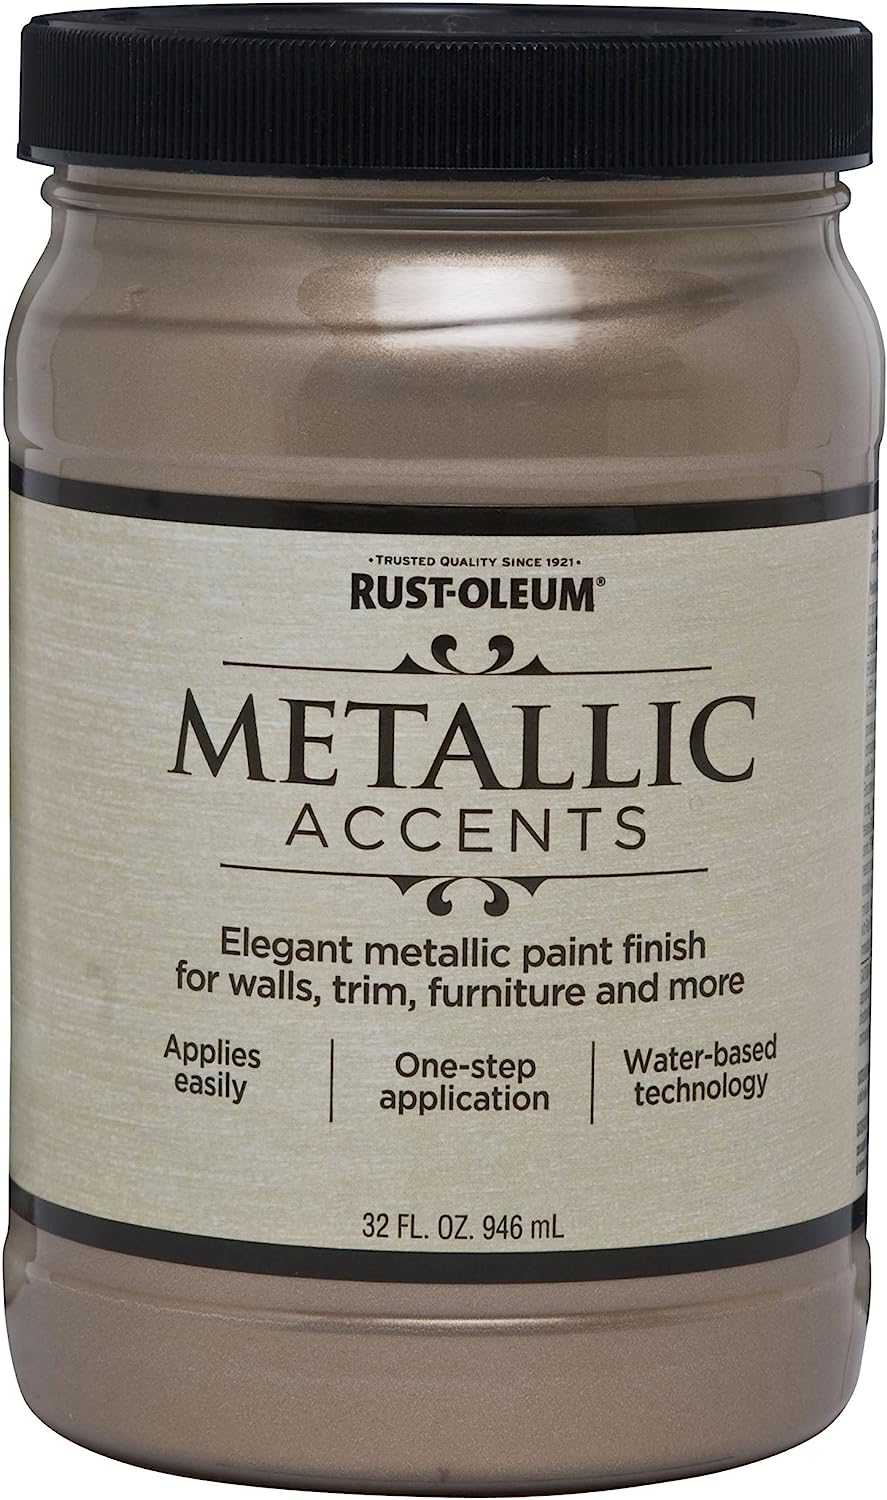 Rust-Oleum 253601 Metallic Accents Paint, Quart, [...]